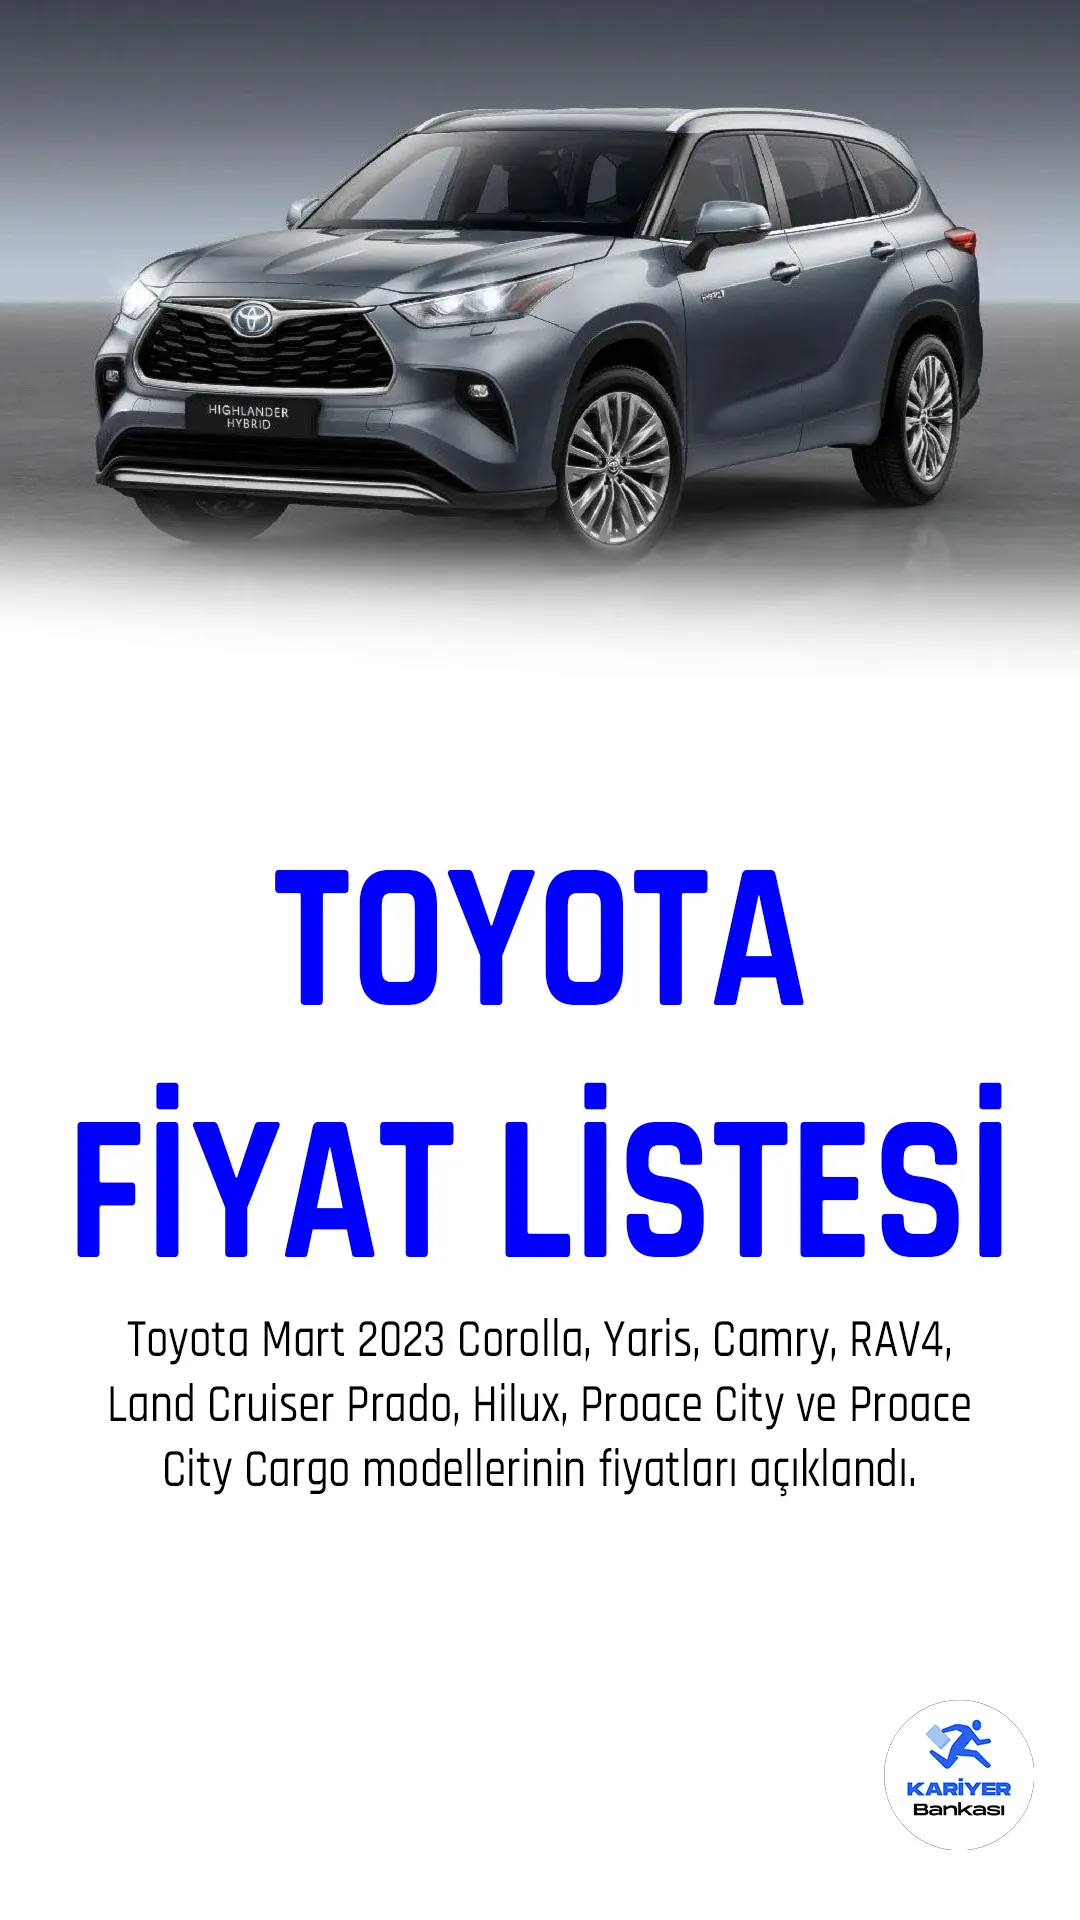 Toyota, Mart 2023 fiyat listesini yayımladı. Corolla, Yaris, Camry, RAV4, Land Cruiser Prado, Hilux, Proace City ve Proace City Cargo modellerinin fiyatları açıklandı.